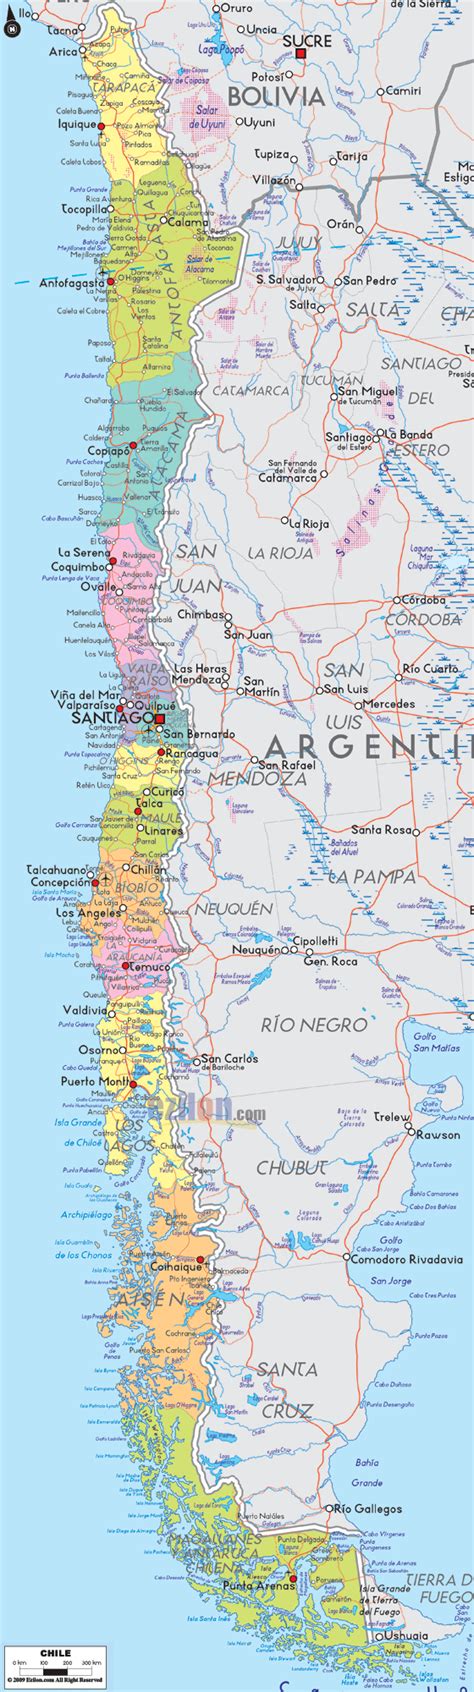 Google Image Result For Https Ezilon Com Maps Images Southamerica